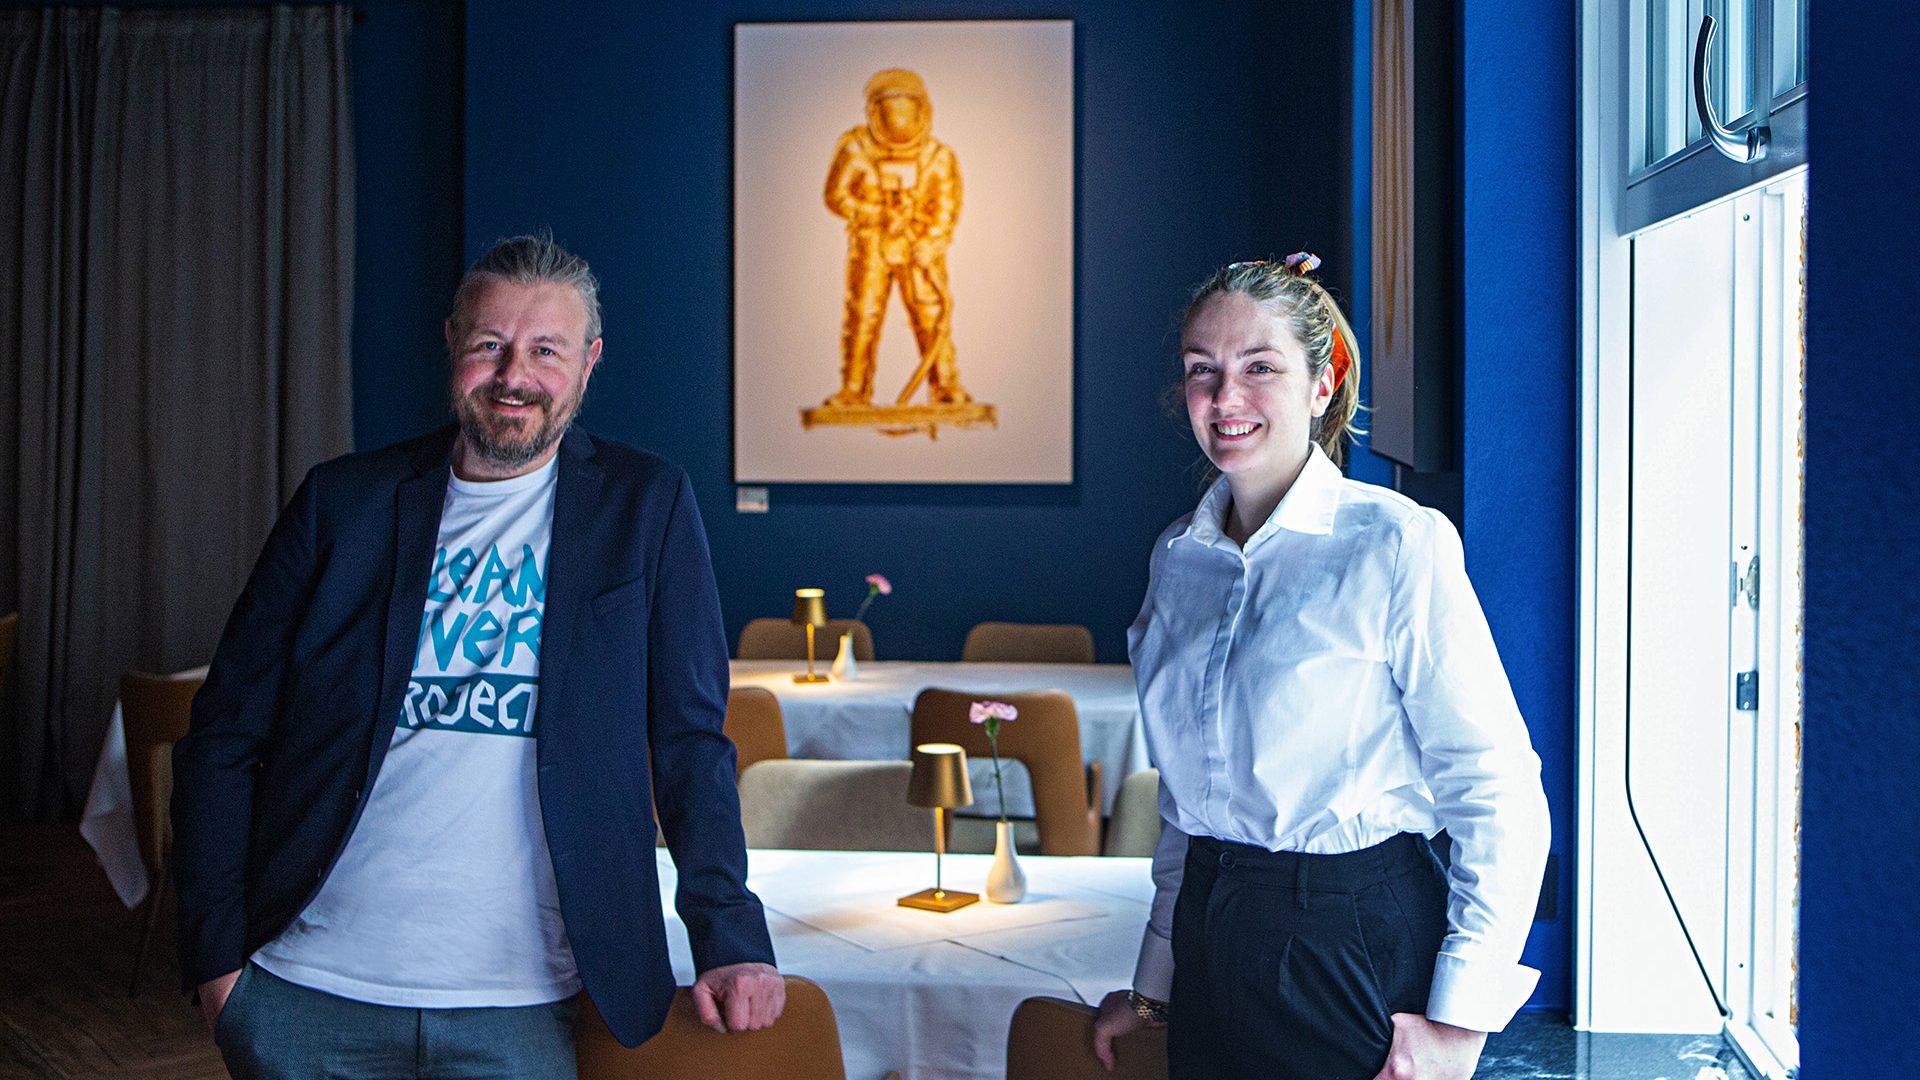 Stephan Horch und Naomi Burgardt im BEES Restaurant. Das Kunstwerk "Astronaut" leuchtet gold im Hintergrund.